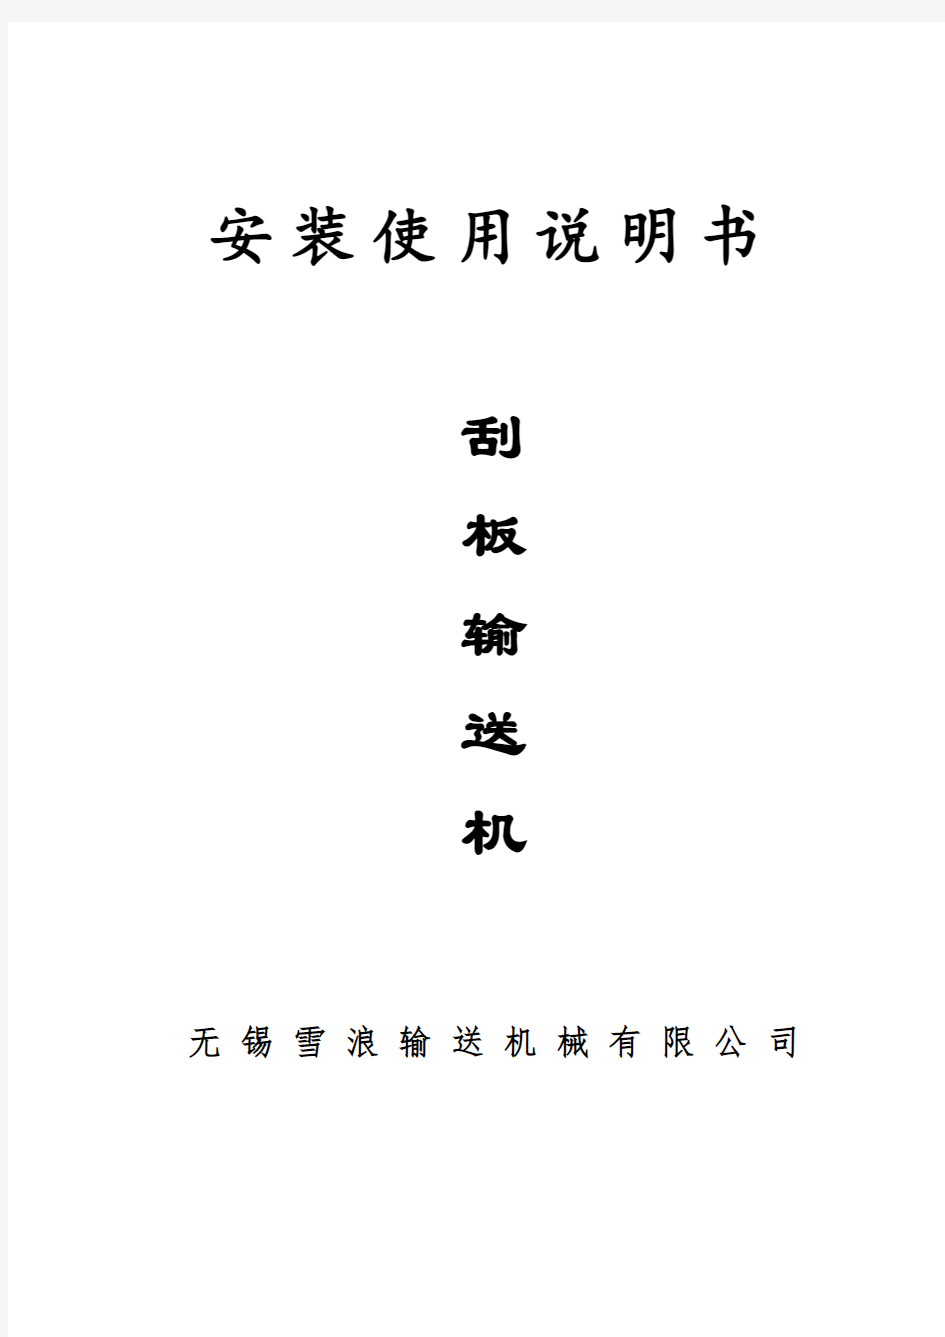 刮板机安装使用说明书-中文